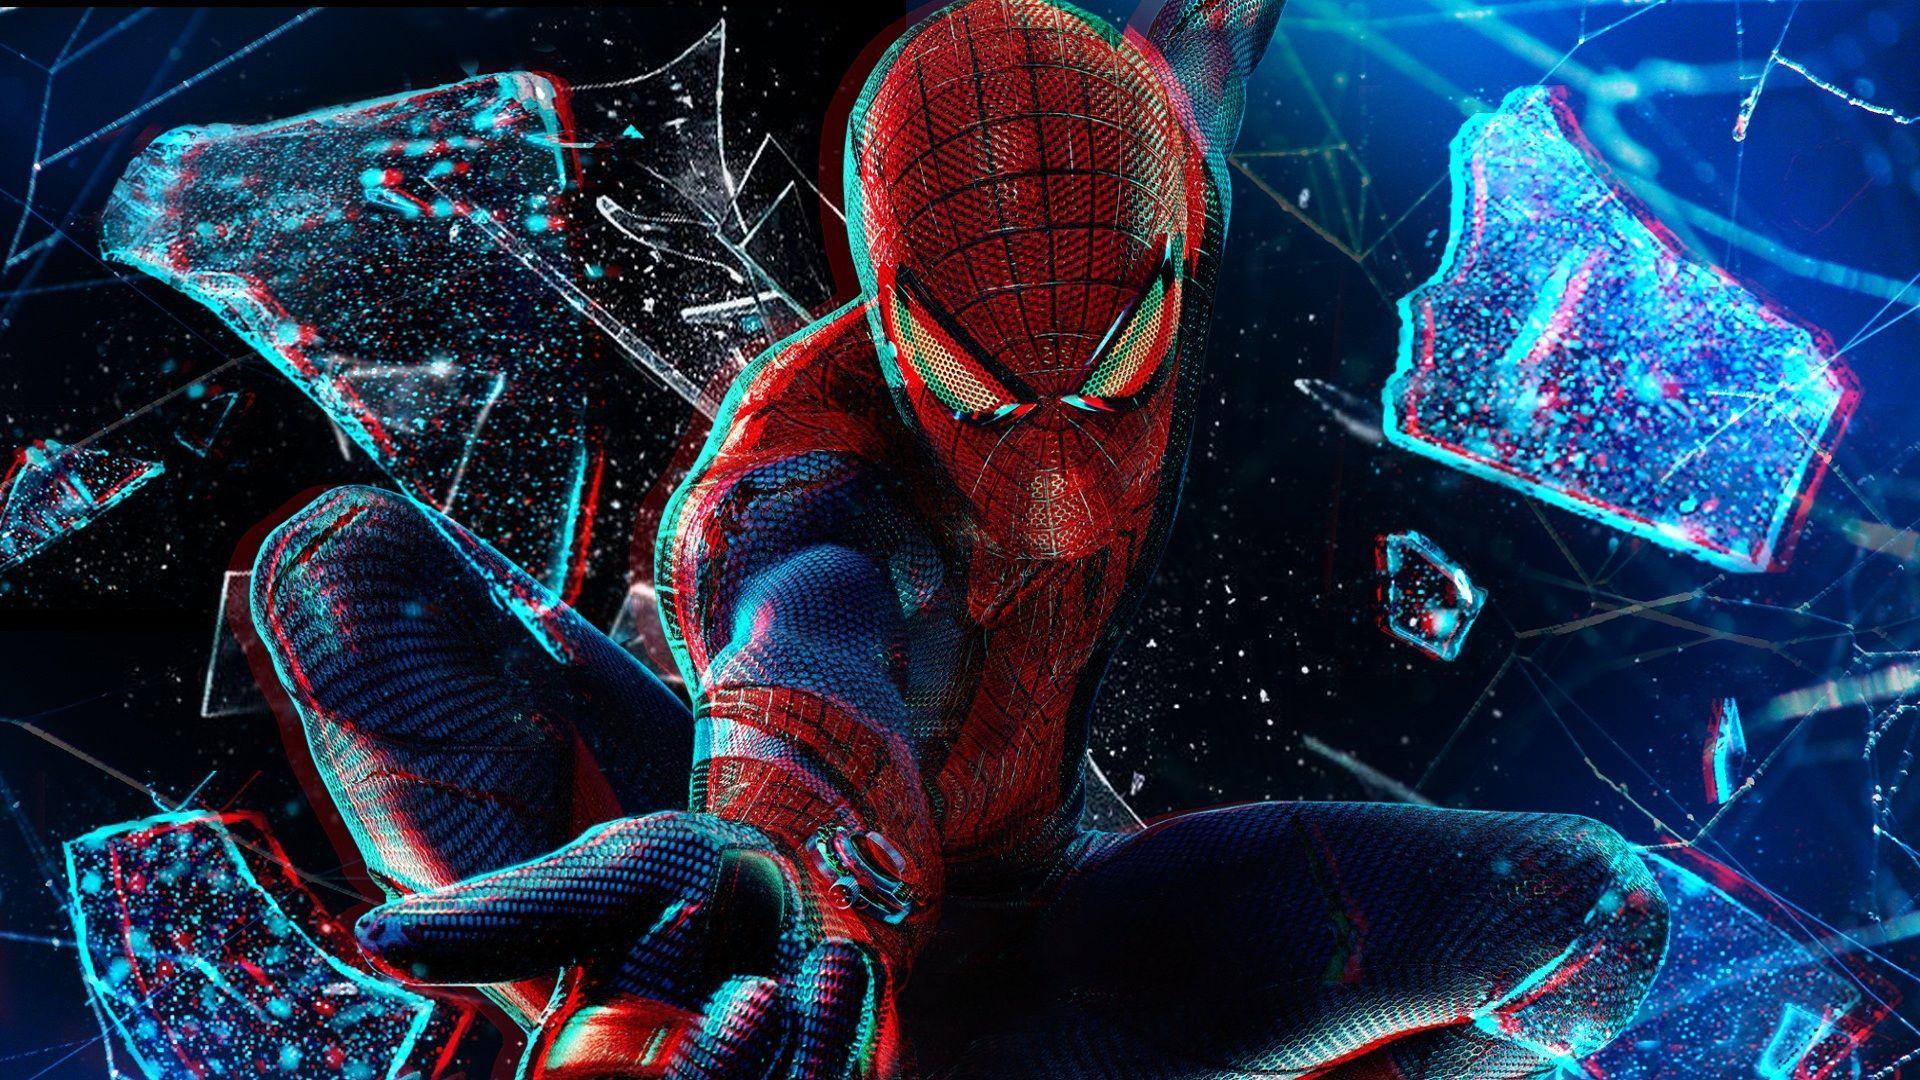 Thay đổi hình nền laptop của bạn với hình nền Spider-Man và trở thành chiến binh siêu năng lực. Spider-Man sẽ giúp bạn tập trung hơn vào công việc của mình và cảm thấy một sức mạnh mới từ bộ sưu tập hình nền đầy sắc màu.